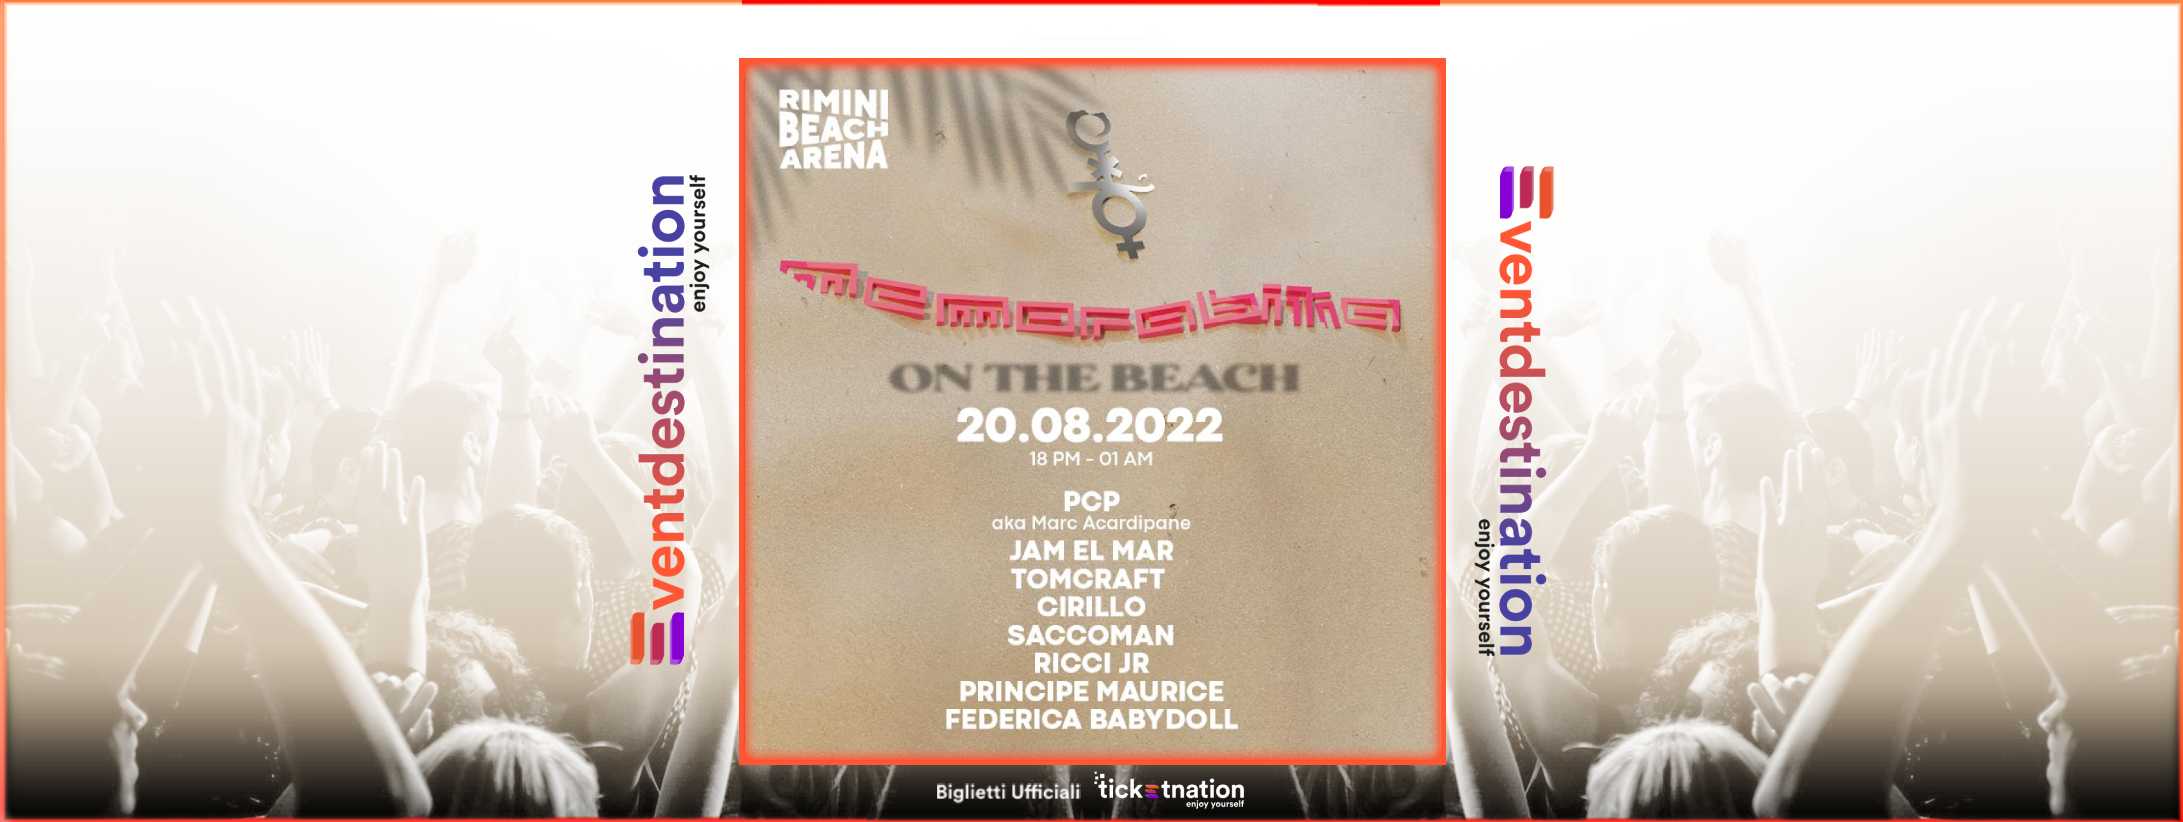 Memo @ Rimini beach arena & cocorico ago 2022